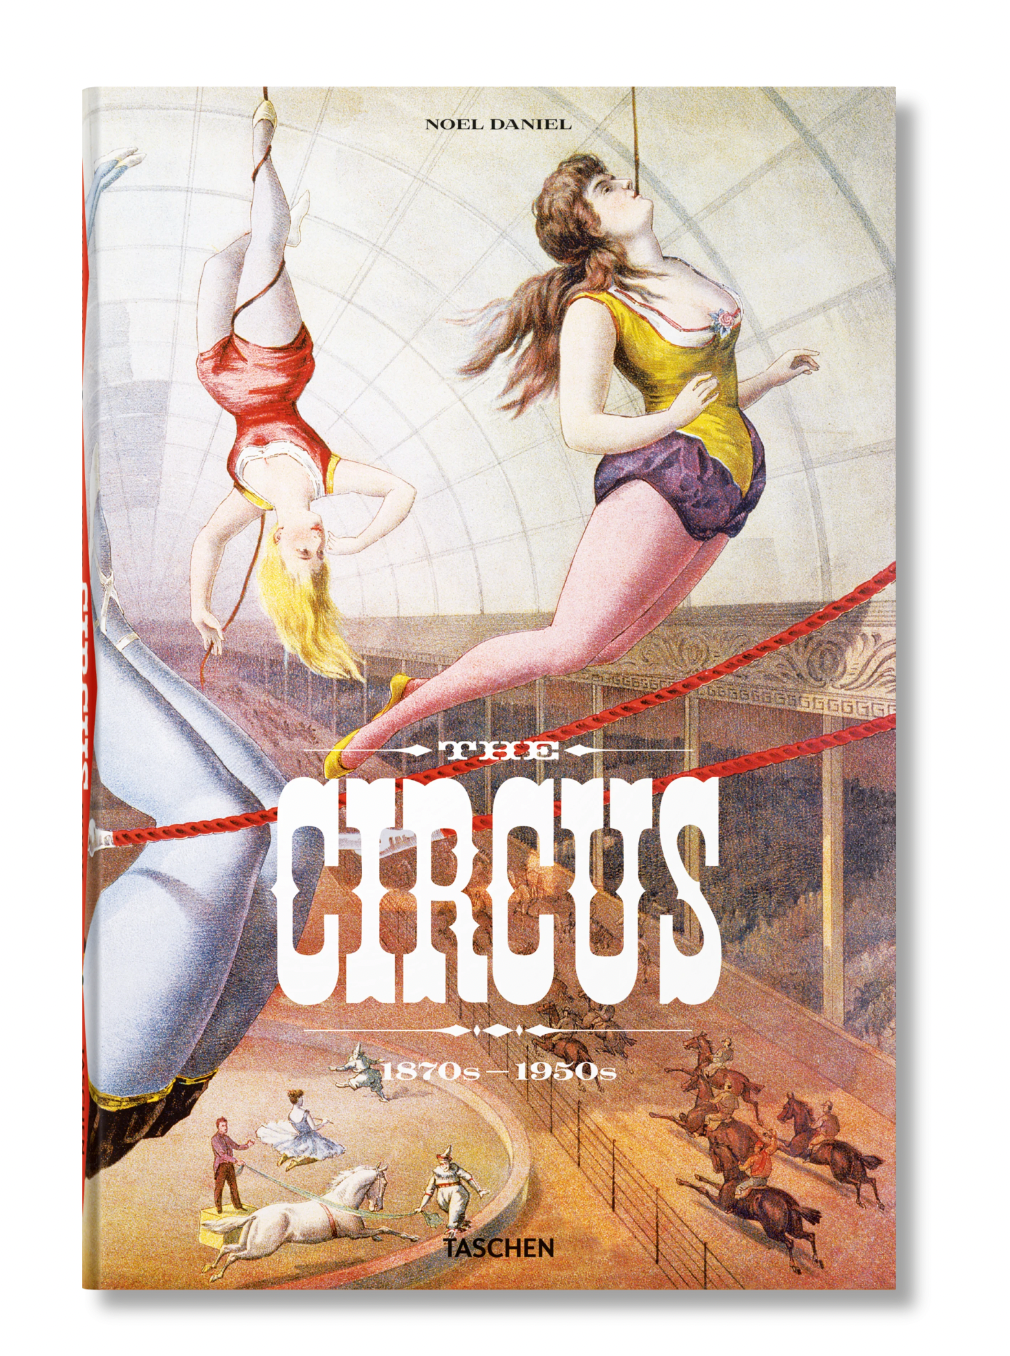 Circus 1870S-1950S